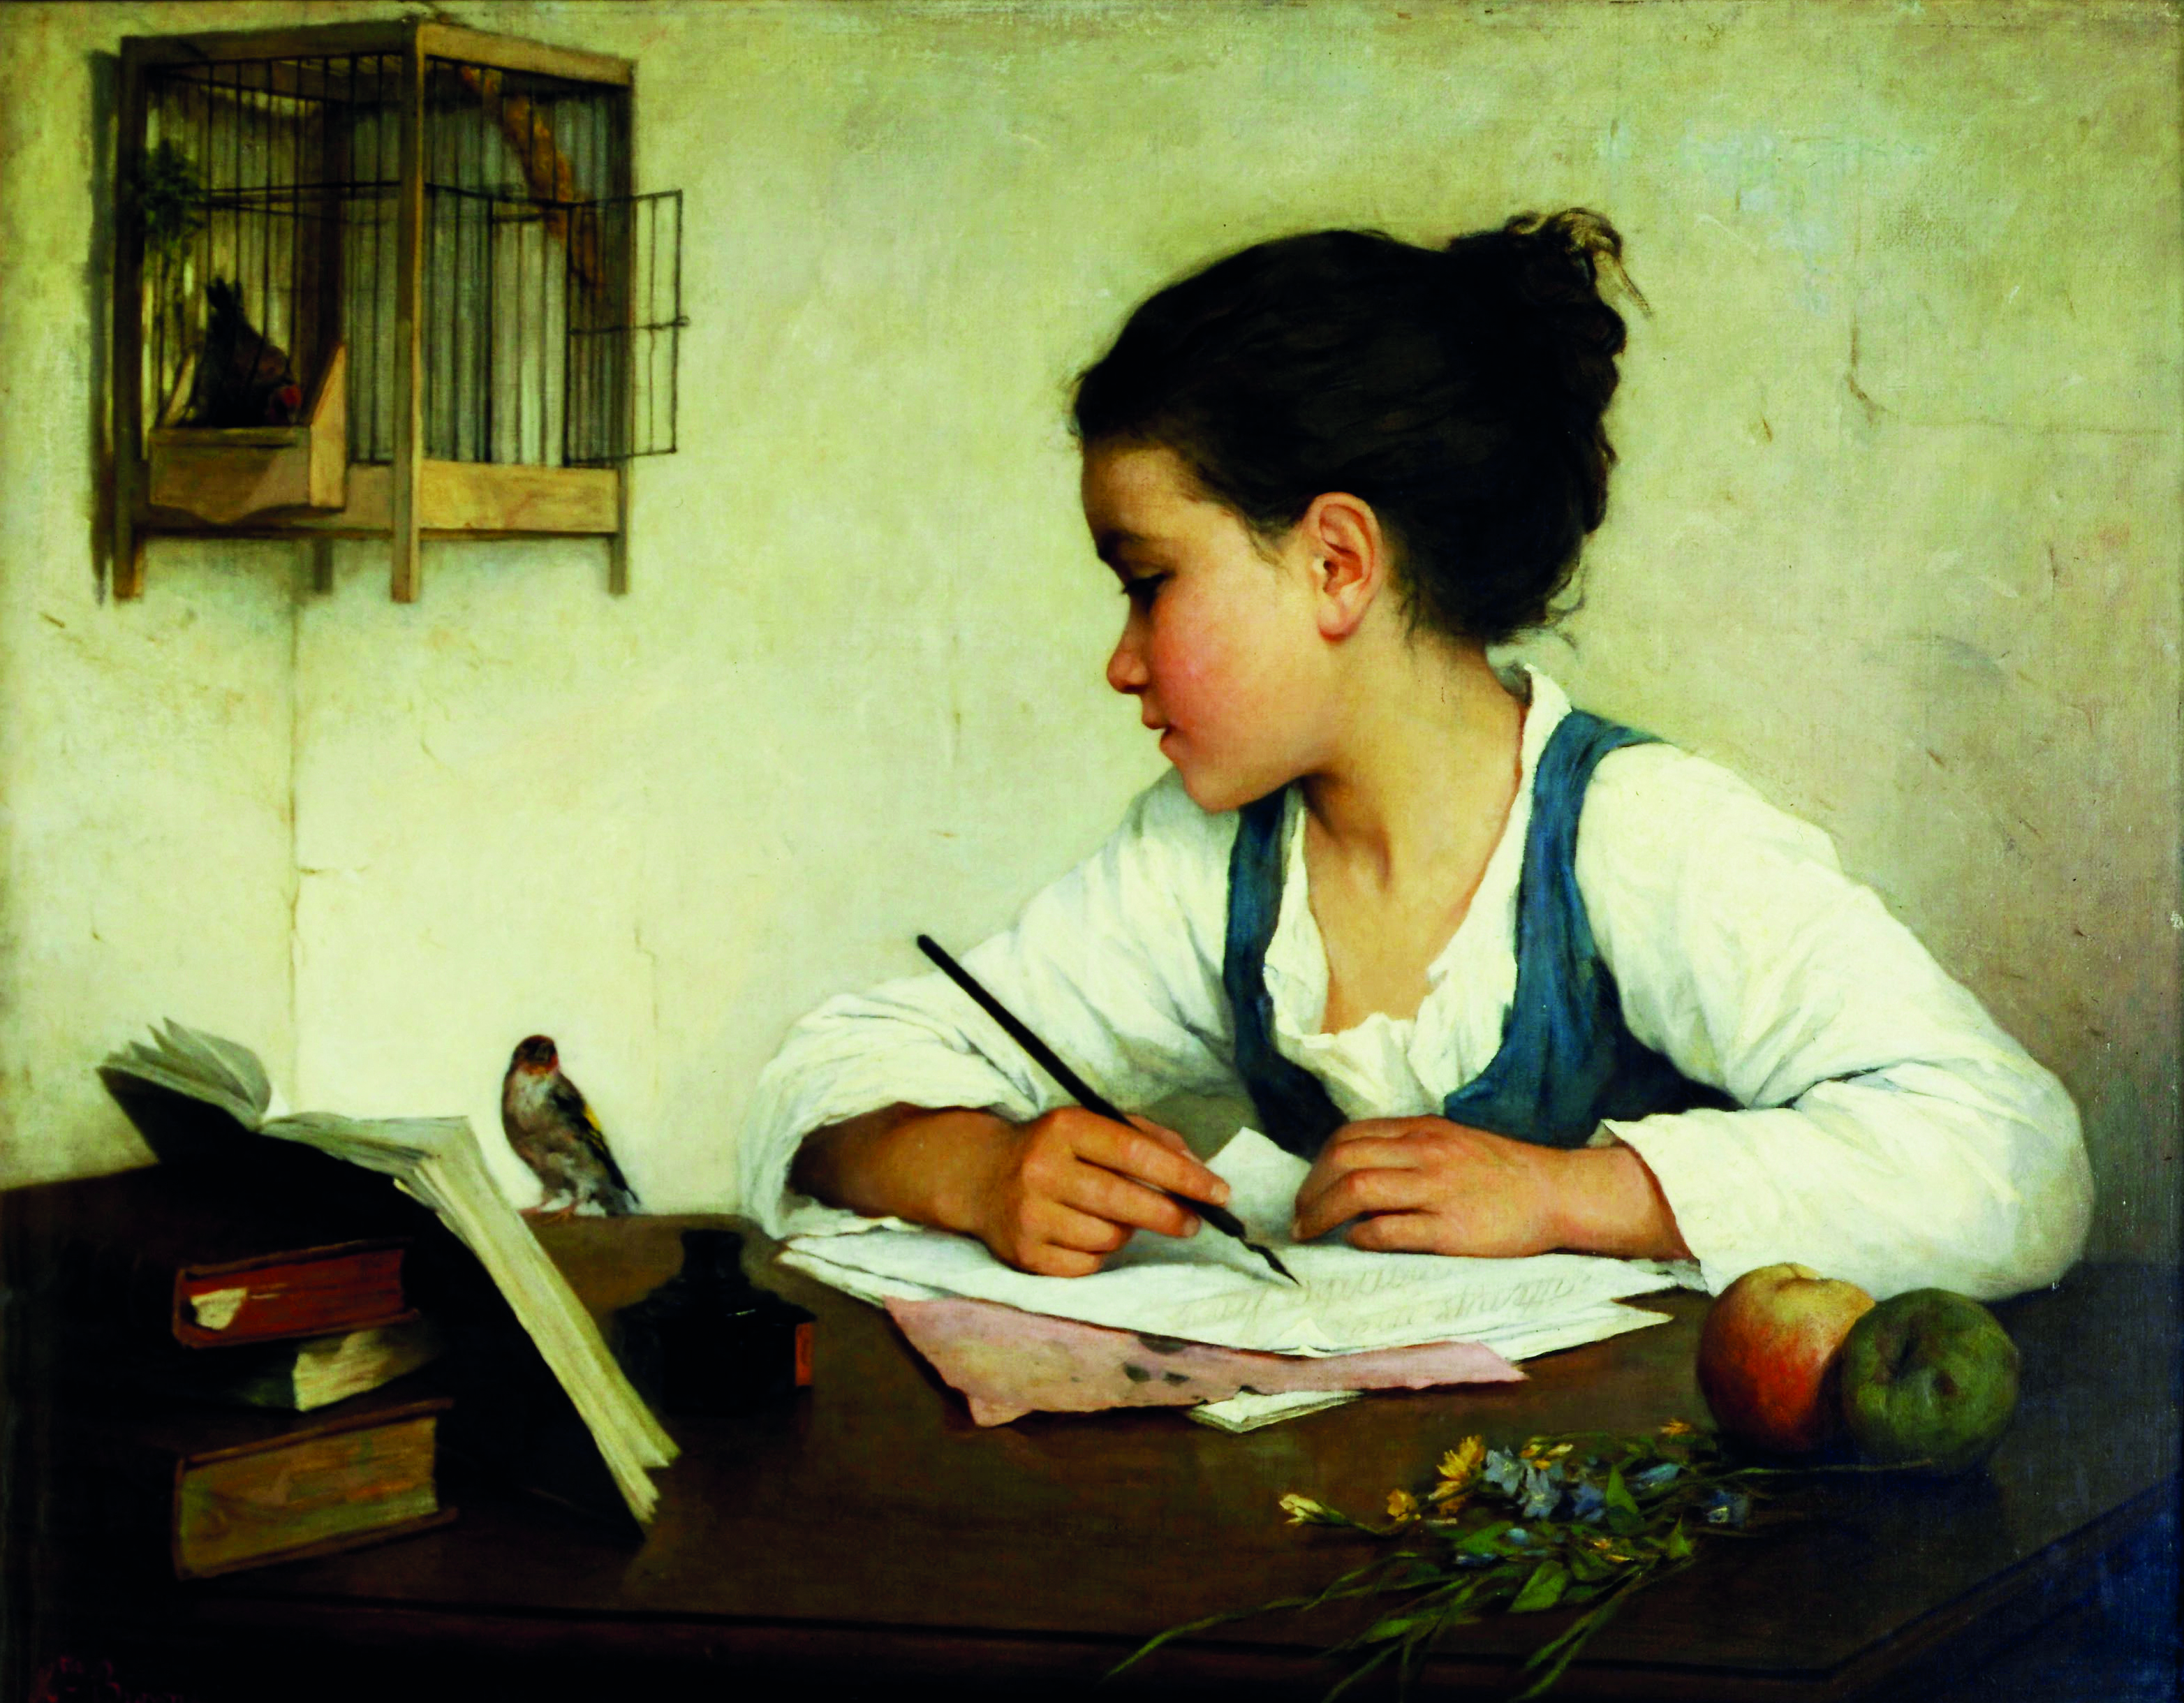 Målning av flicka som sitter med böcker och anteckningsmaterial.